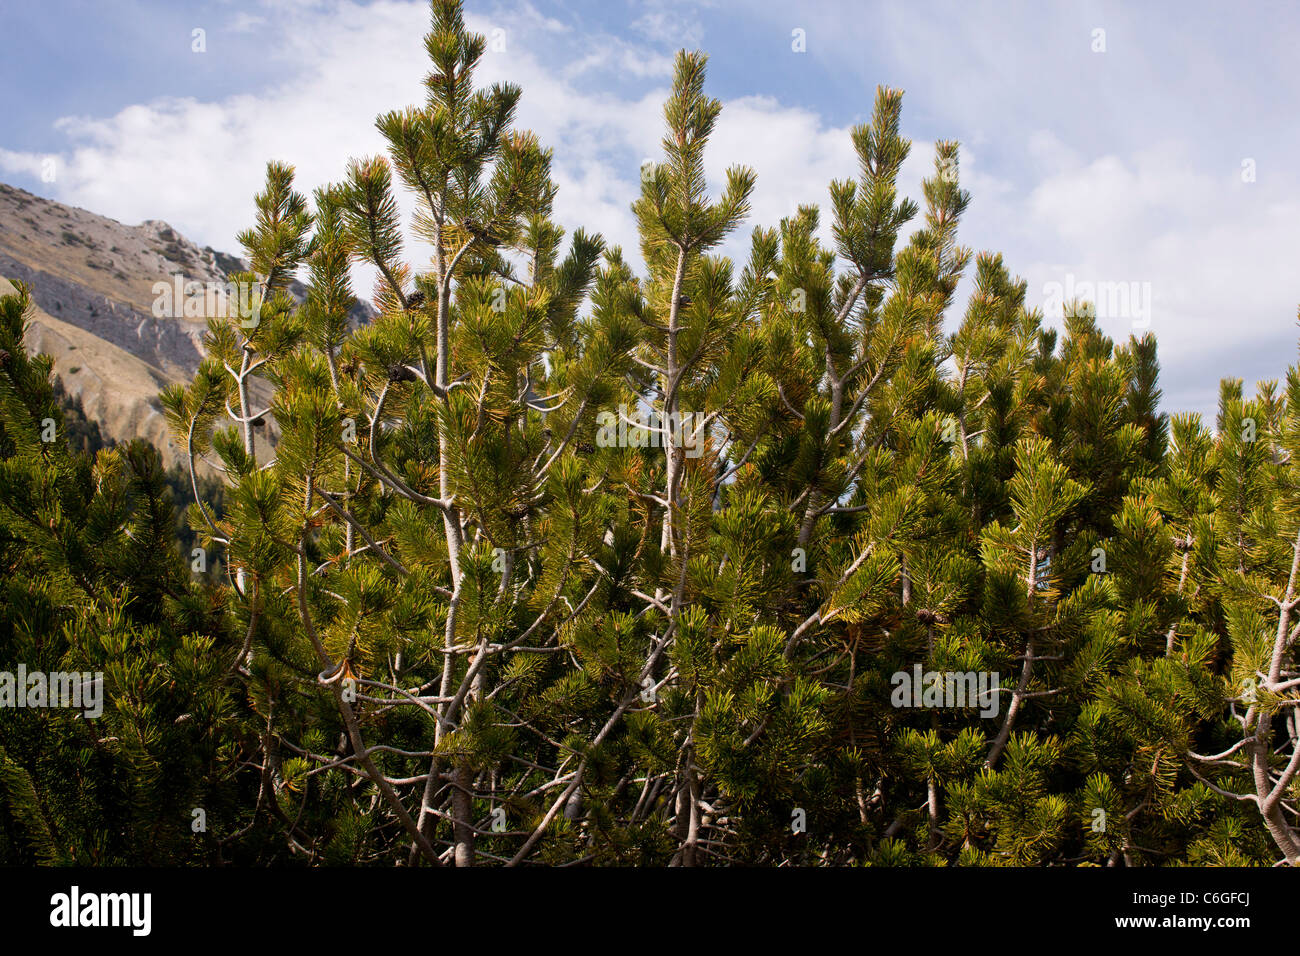 Pino enano, Pinus mugo en la línea de árboles, Pirin, Bulgaria Foto de stock